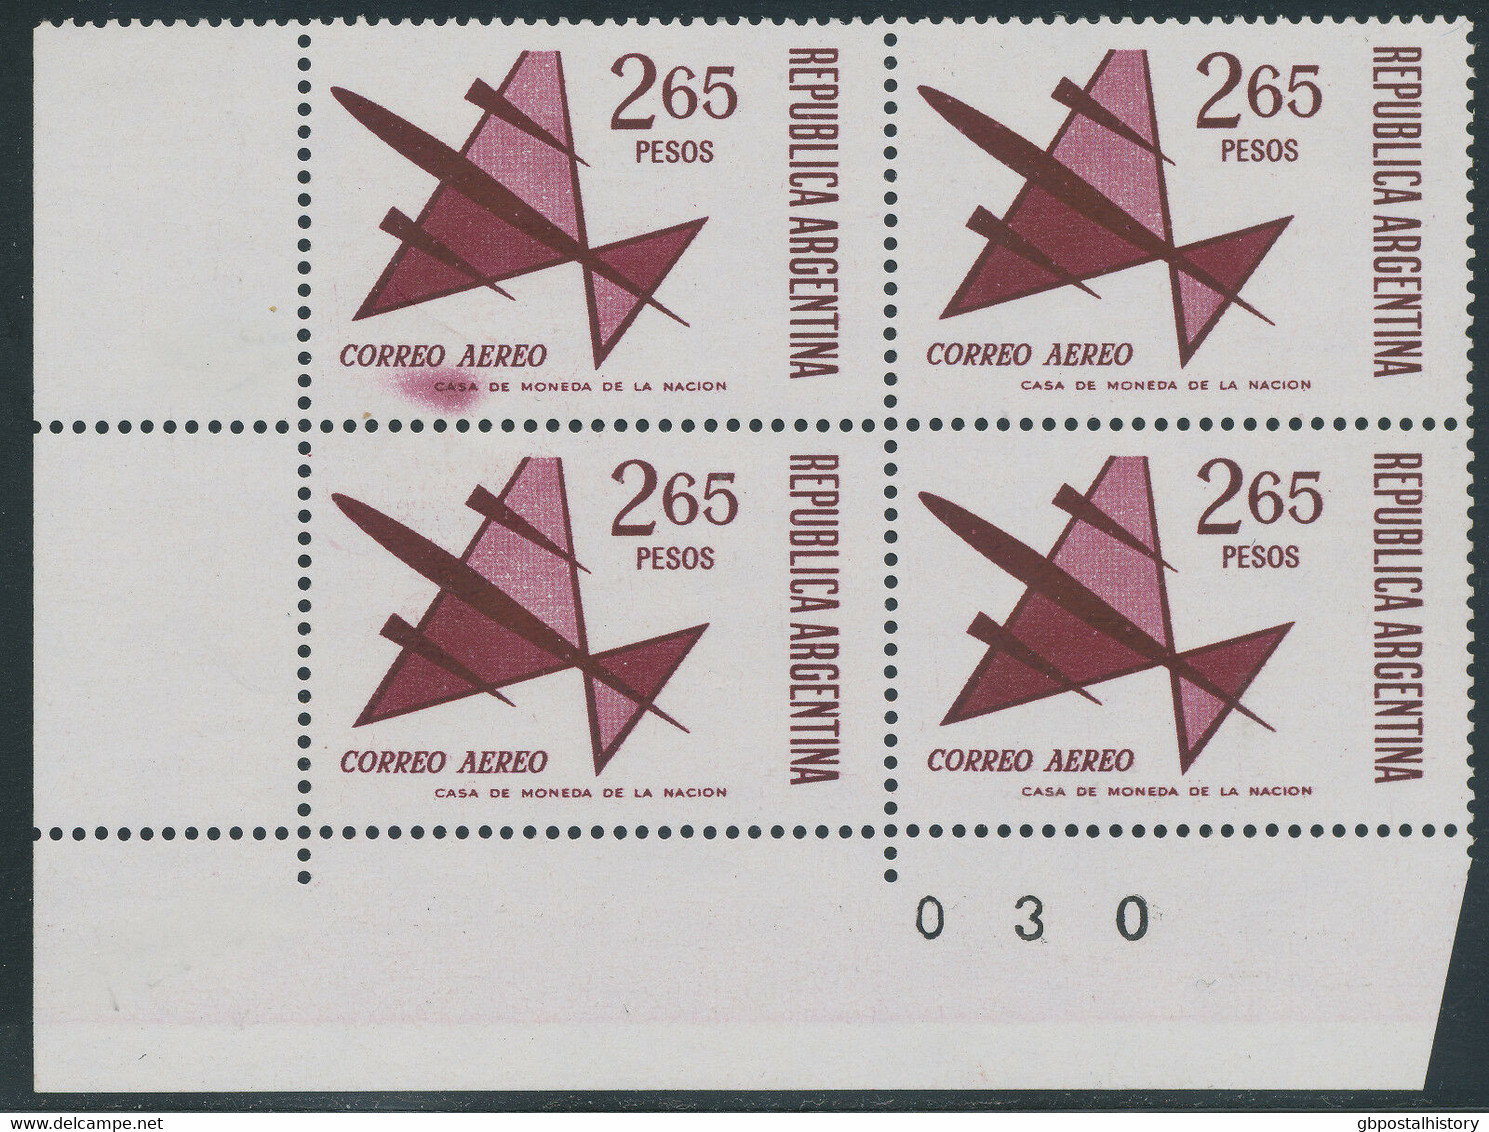 ARGENTINIEN 1967 78 P 1974 2.65 P Flp.-Ausgabe Postfrische Viererblöcke ABARTEN - Luftpost